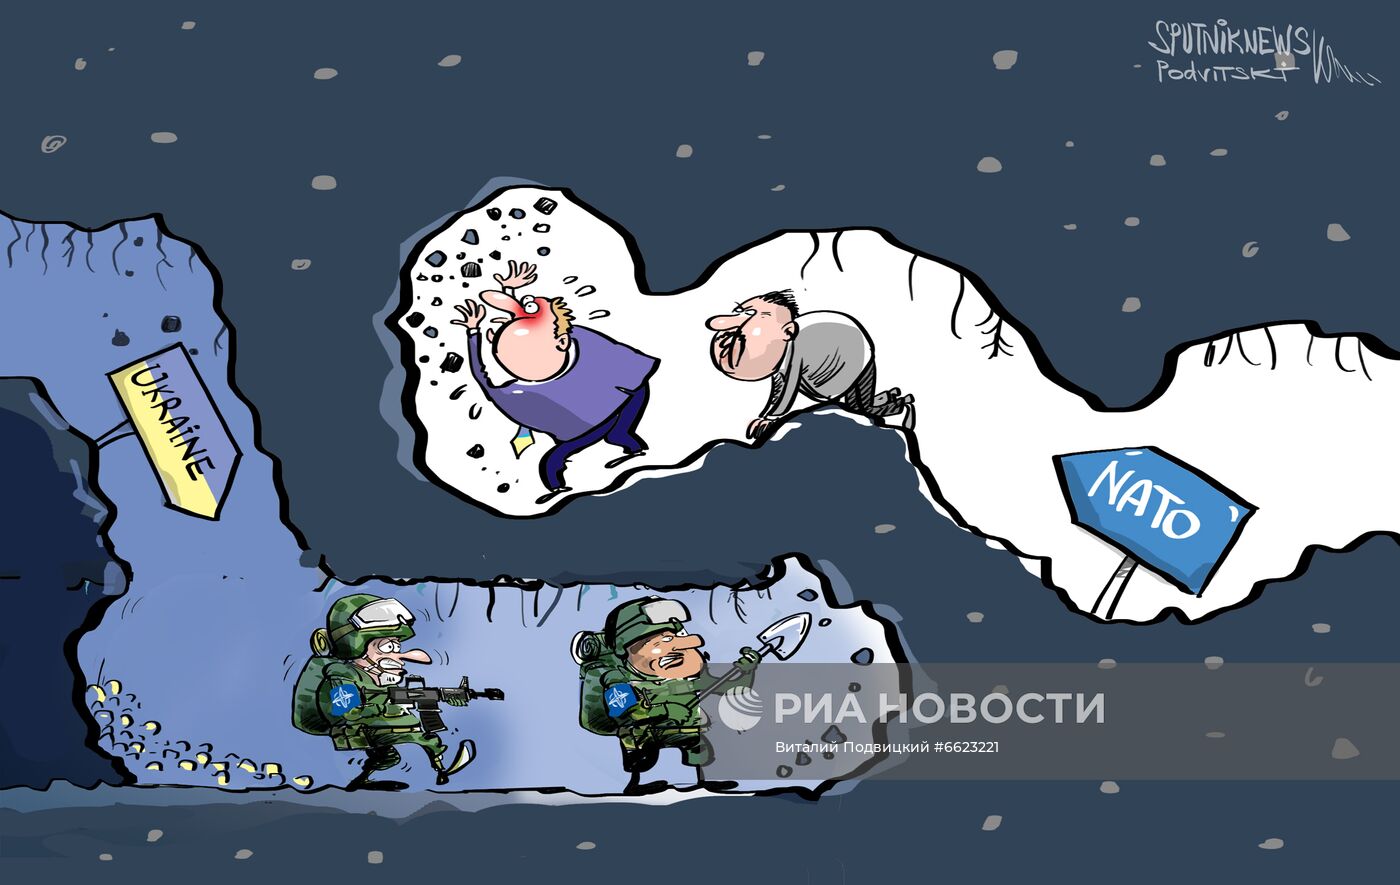 Кулеба сравнил вступление Украины в НАТО с "копанием туннеля"